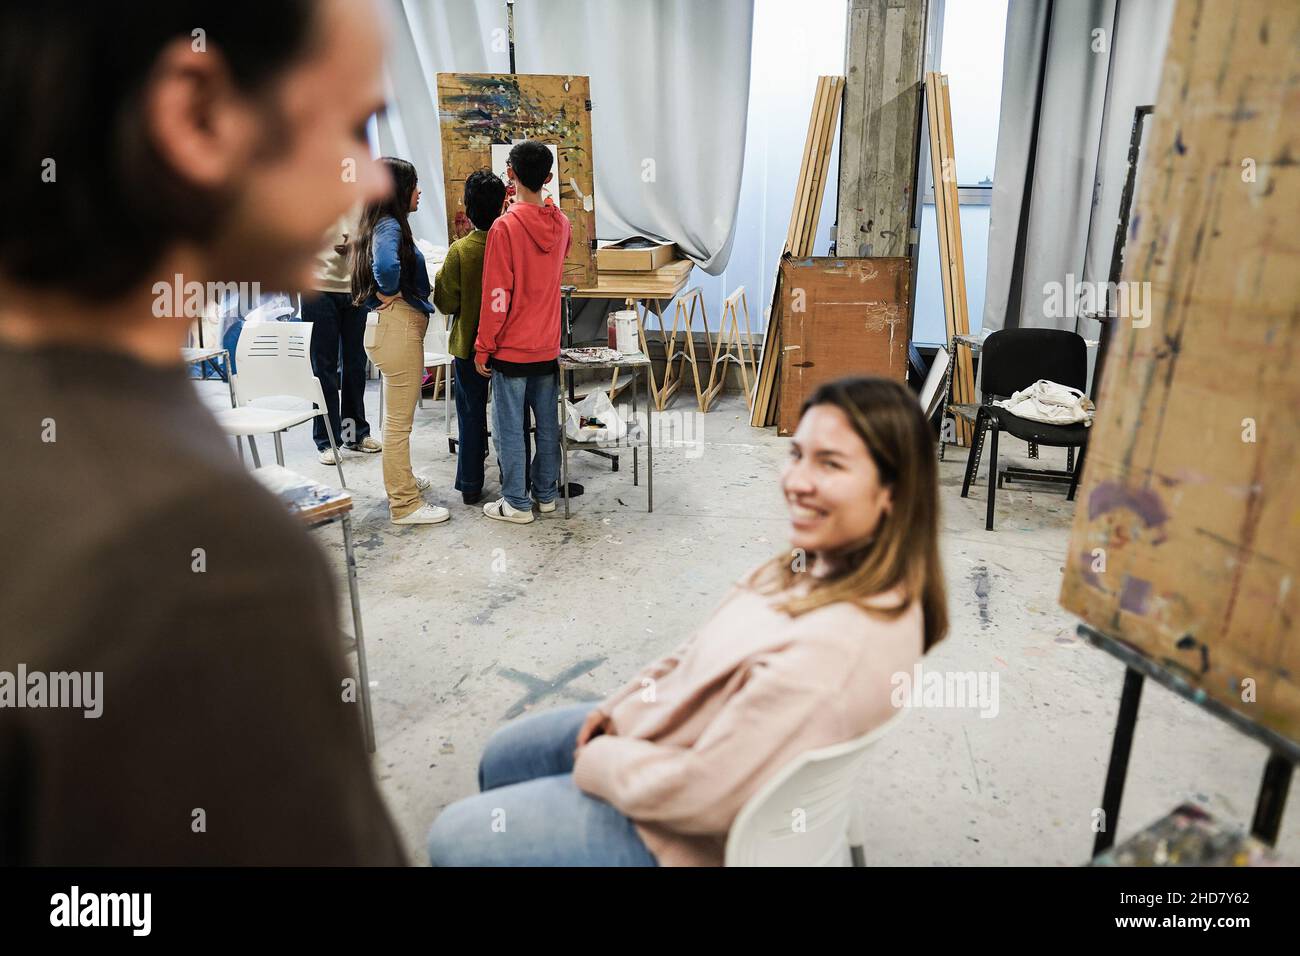 Amici felici che si divertono all'interno della sala d'arte all'università - Focus on students painting on background Foto Stock